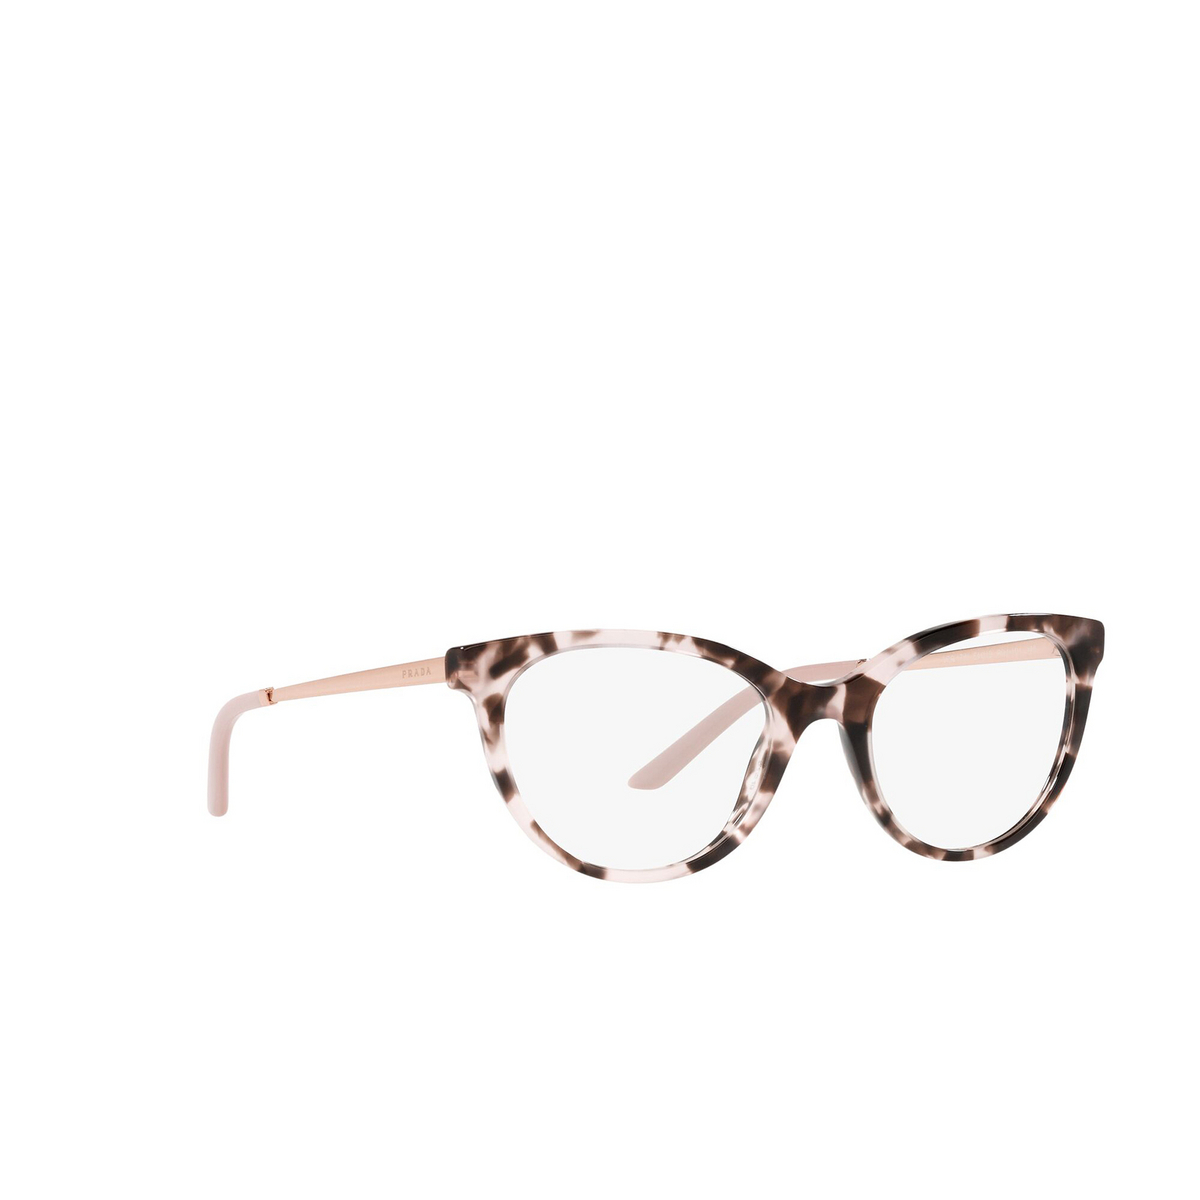 Prada® Oval Eyeglasses: PR 17WV color Orchid Tortoise ROJ1O1 - three-quarters view.